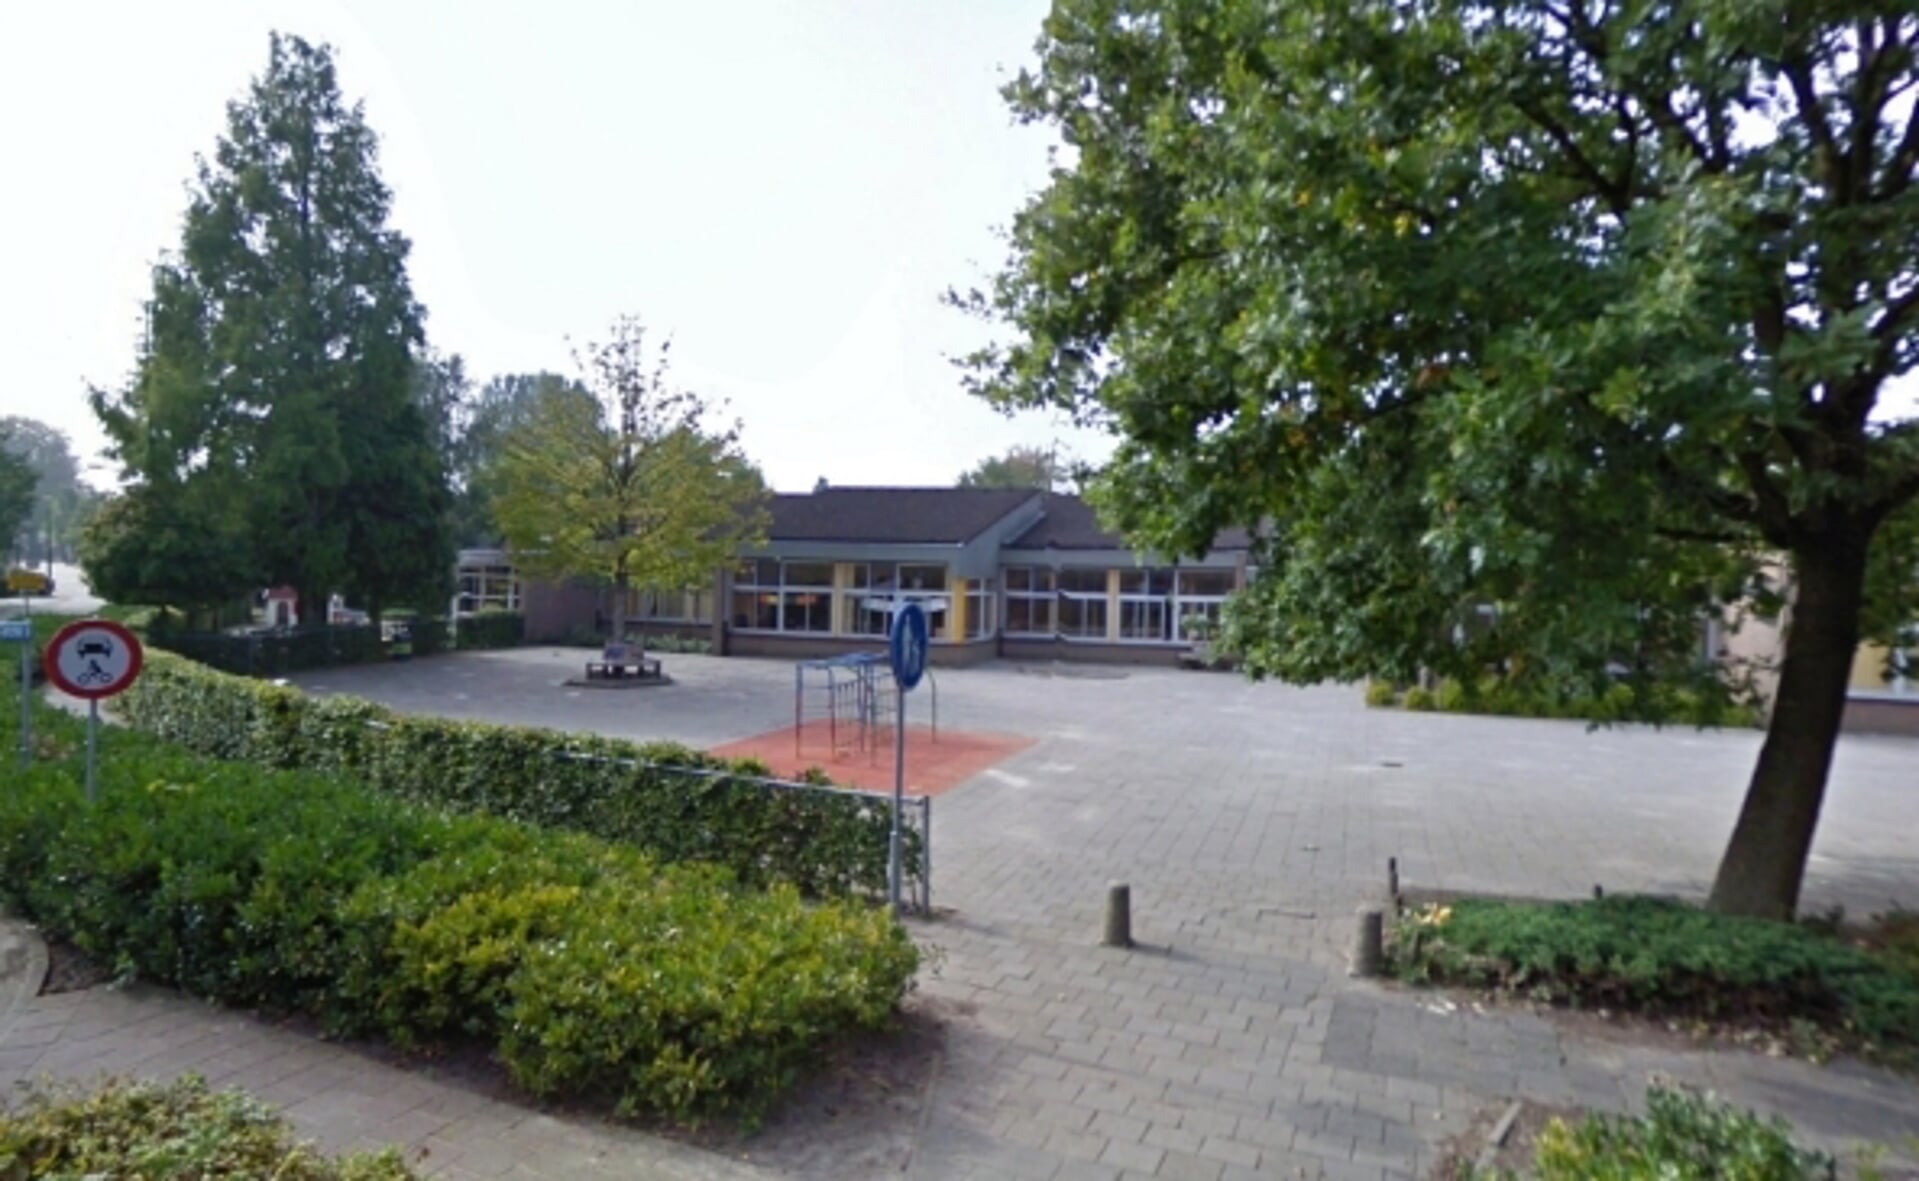 Basisschool Willibrordus in Esch heeft eindelijk duidelijkheid gekregen over vervangende nieuwbouw.